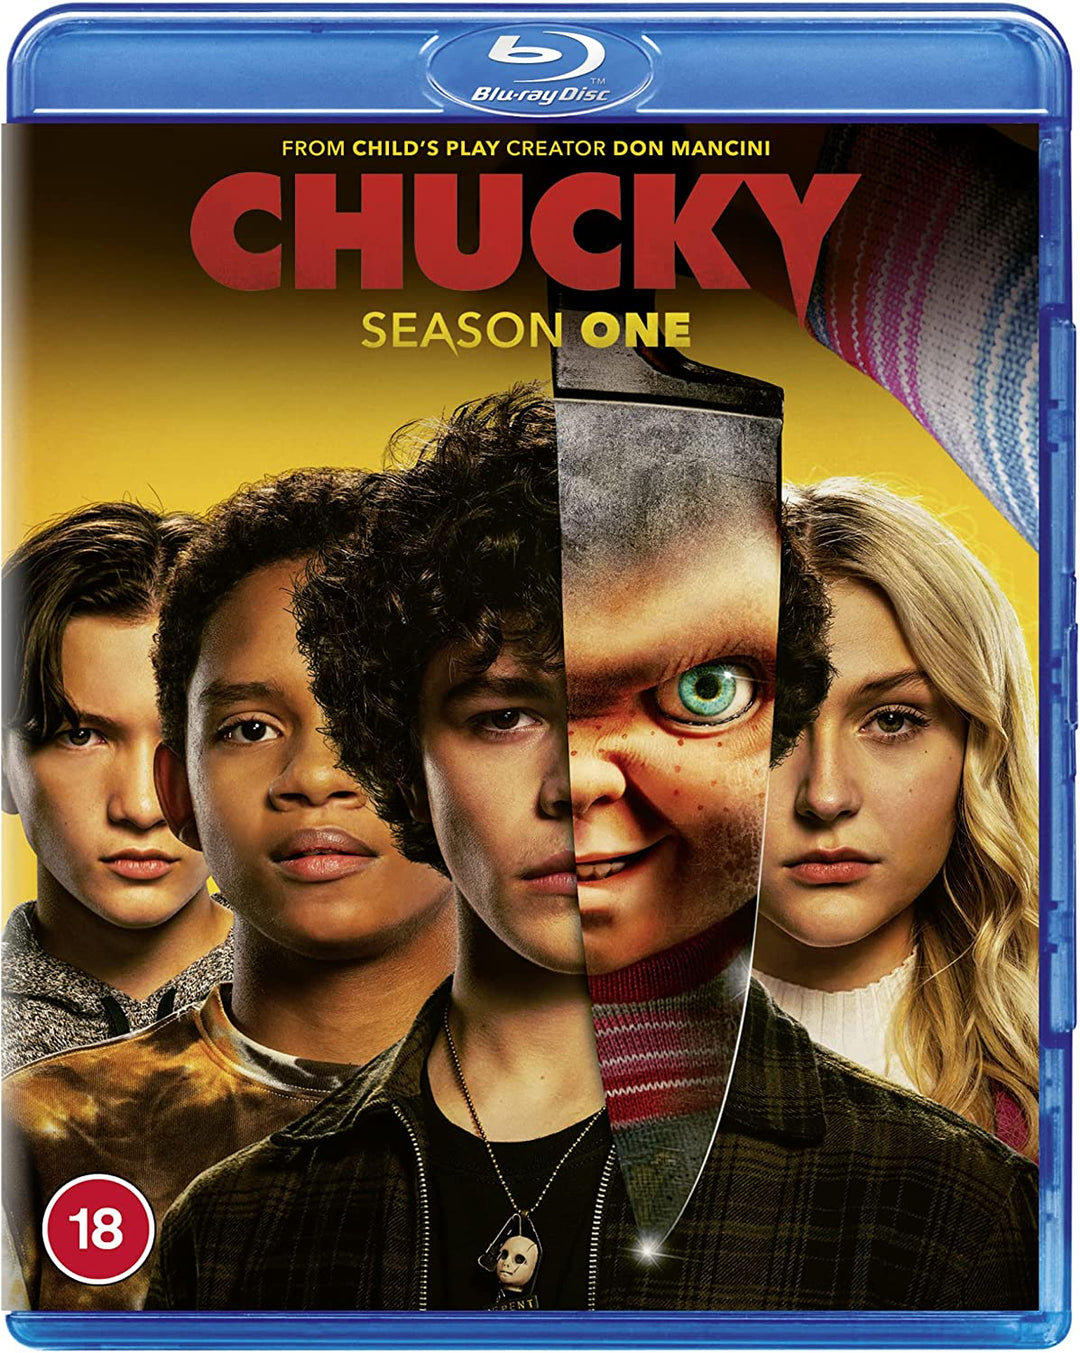 Chucky Season 1 -Horror fiction [Blu-ray] [2021] [Region Free]